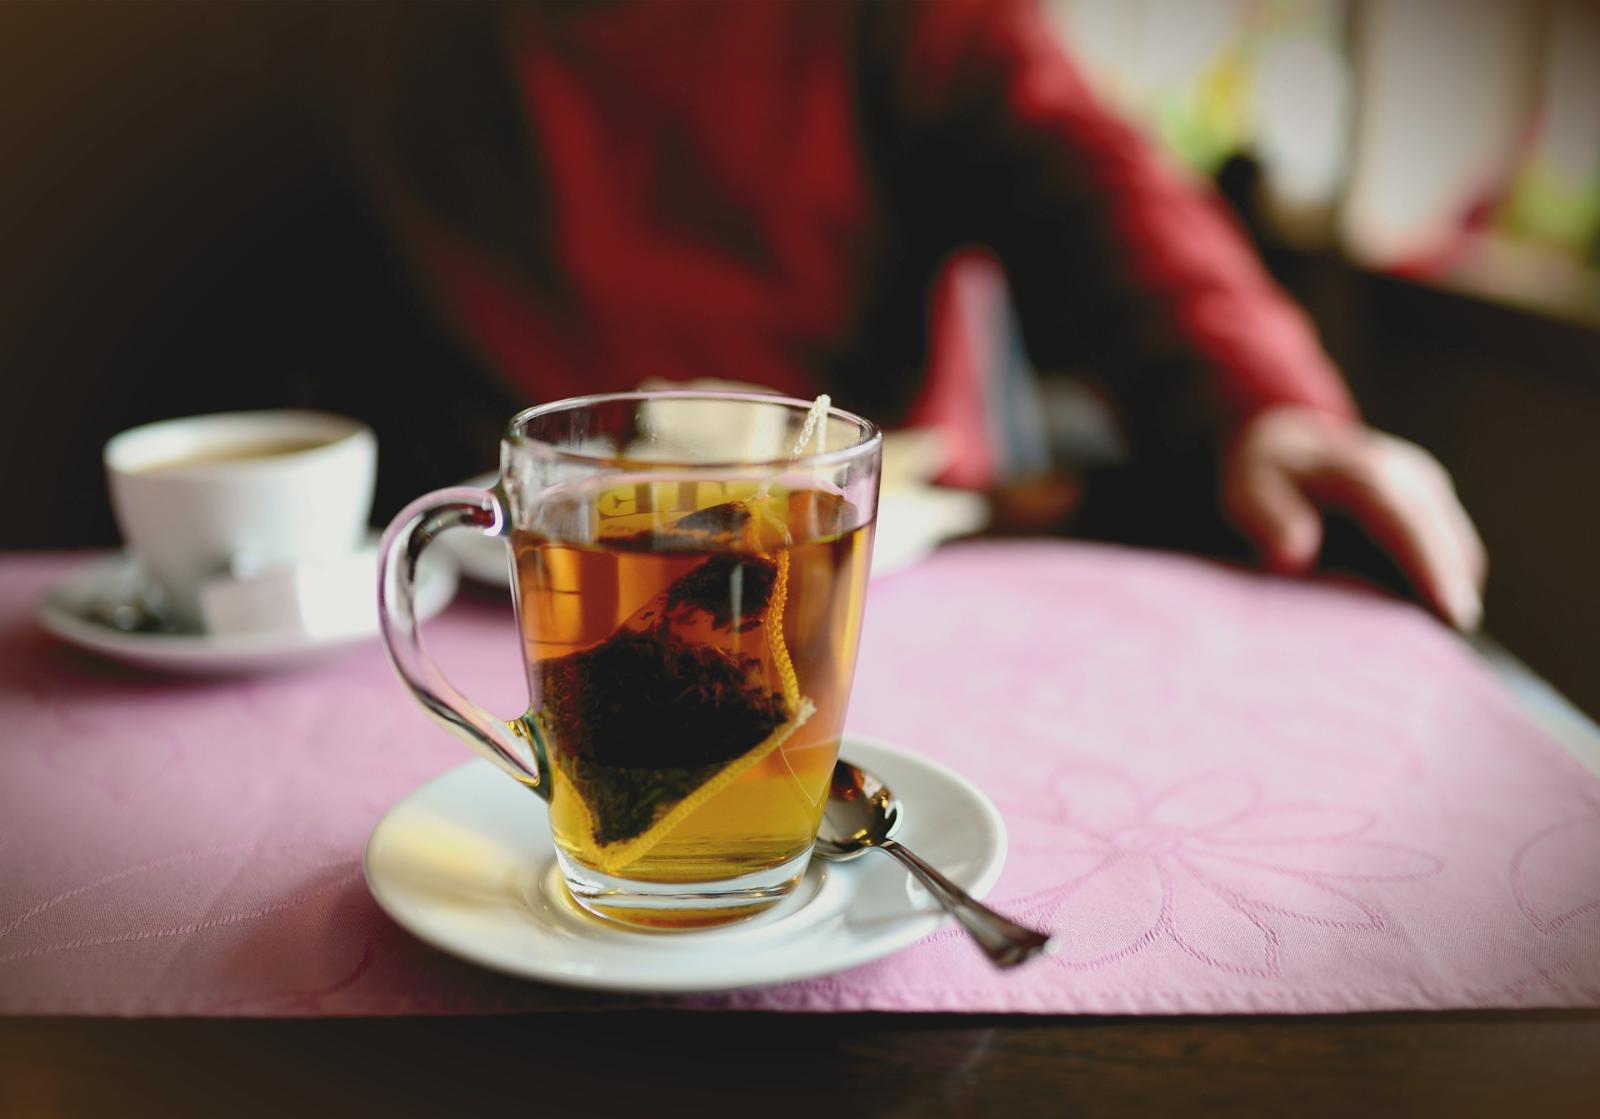 Les dangers des sachets de thé : Faut-il s'inquiéter ?